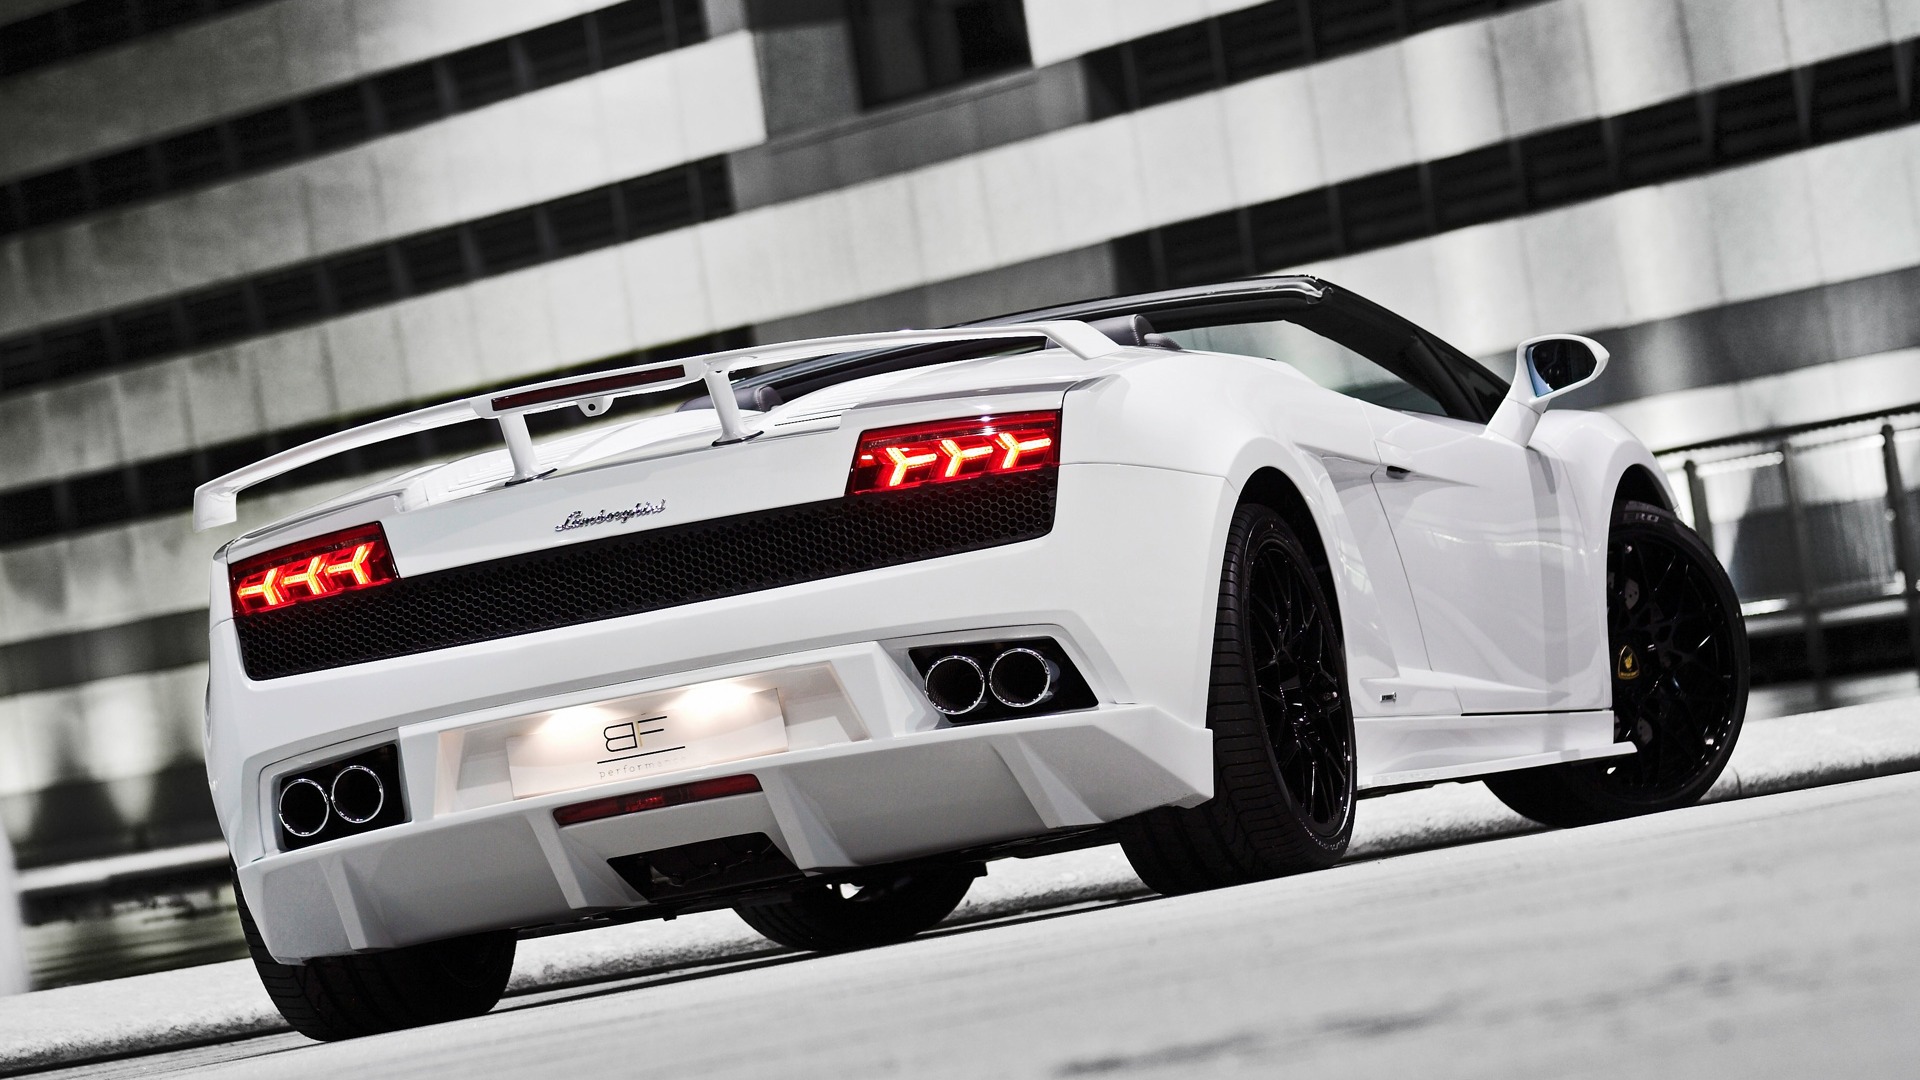 Lamborghini Gallardo Spyder Hd Wallpaper - johnywheels.com